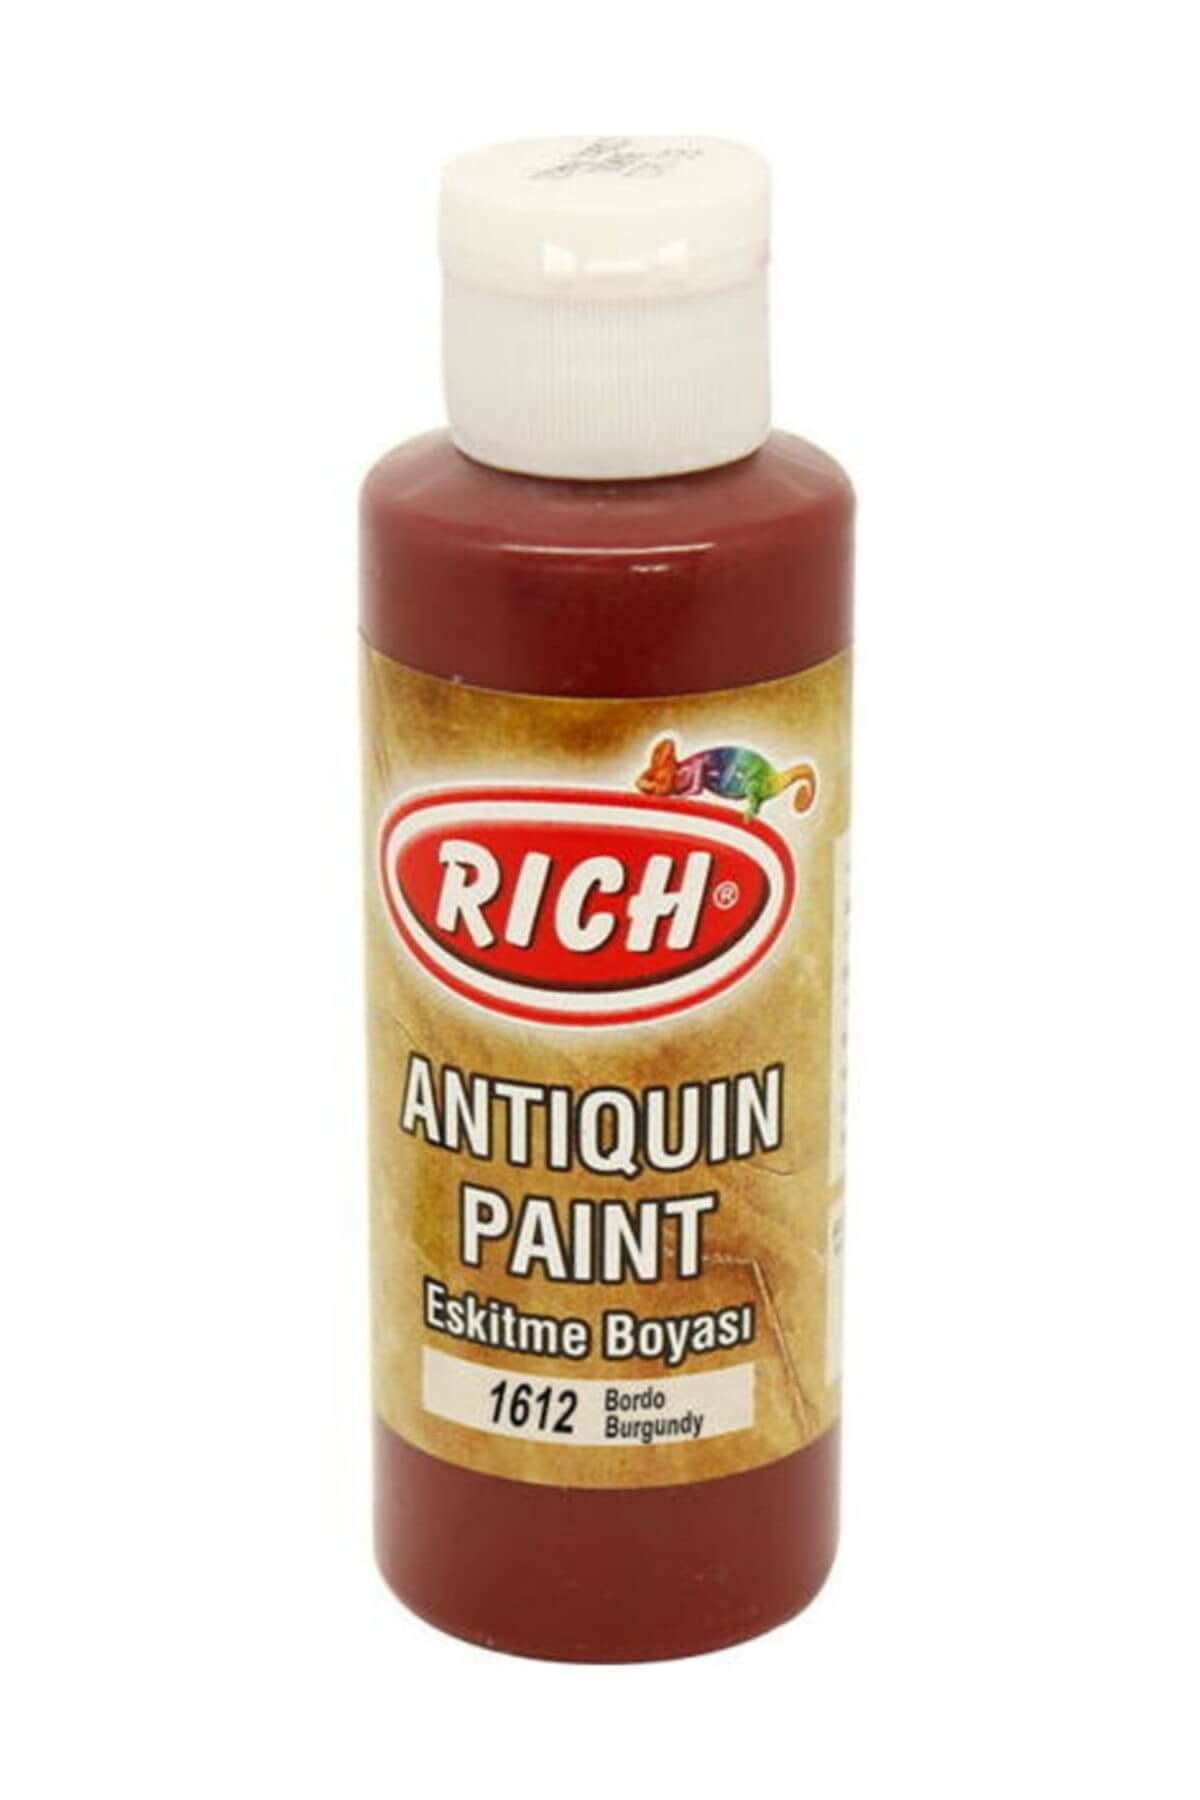 Rich Antiquing Paint Eskitme Ahşap Boyası 130 ml. 1612 Bordo